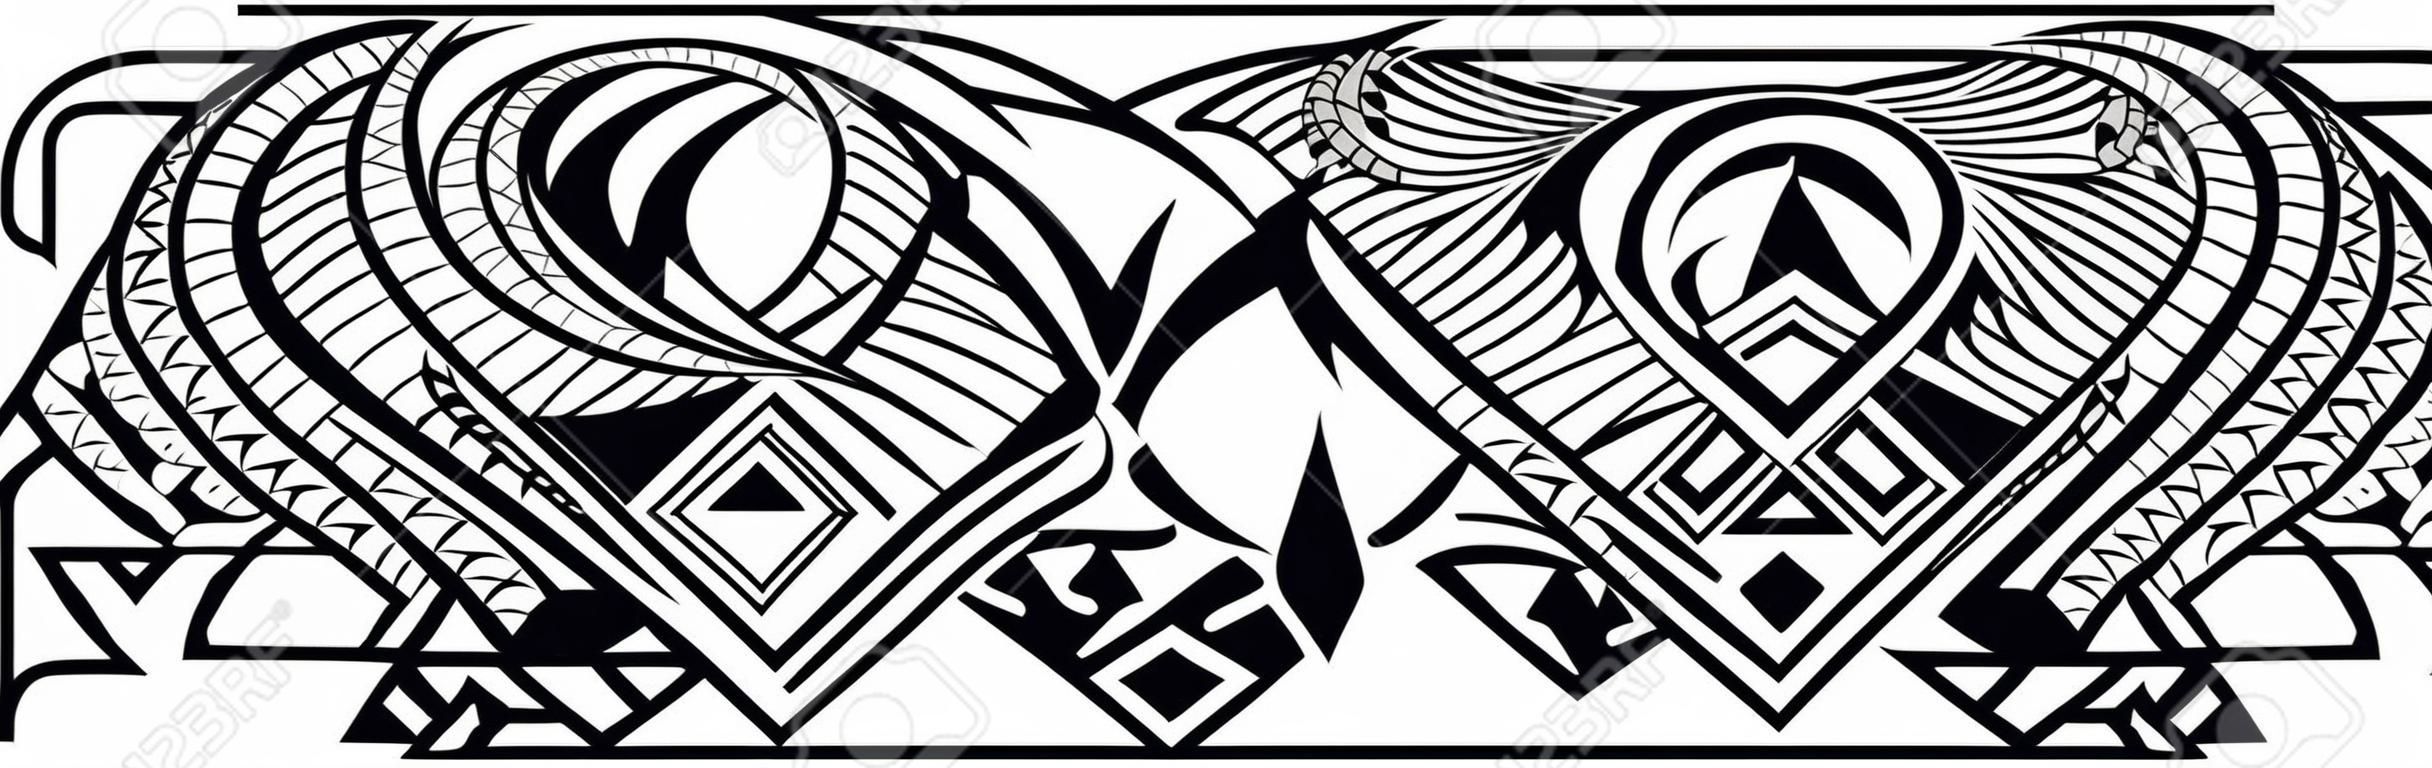 Maori del modello del tatuaggio polinesiano, bordo dell'ornamento delle samoa, vettore del modello tribale etico.